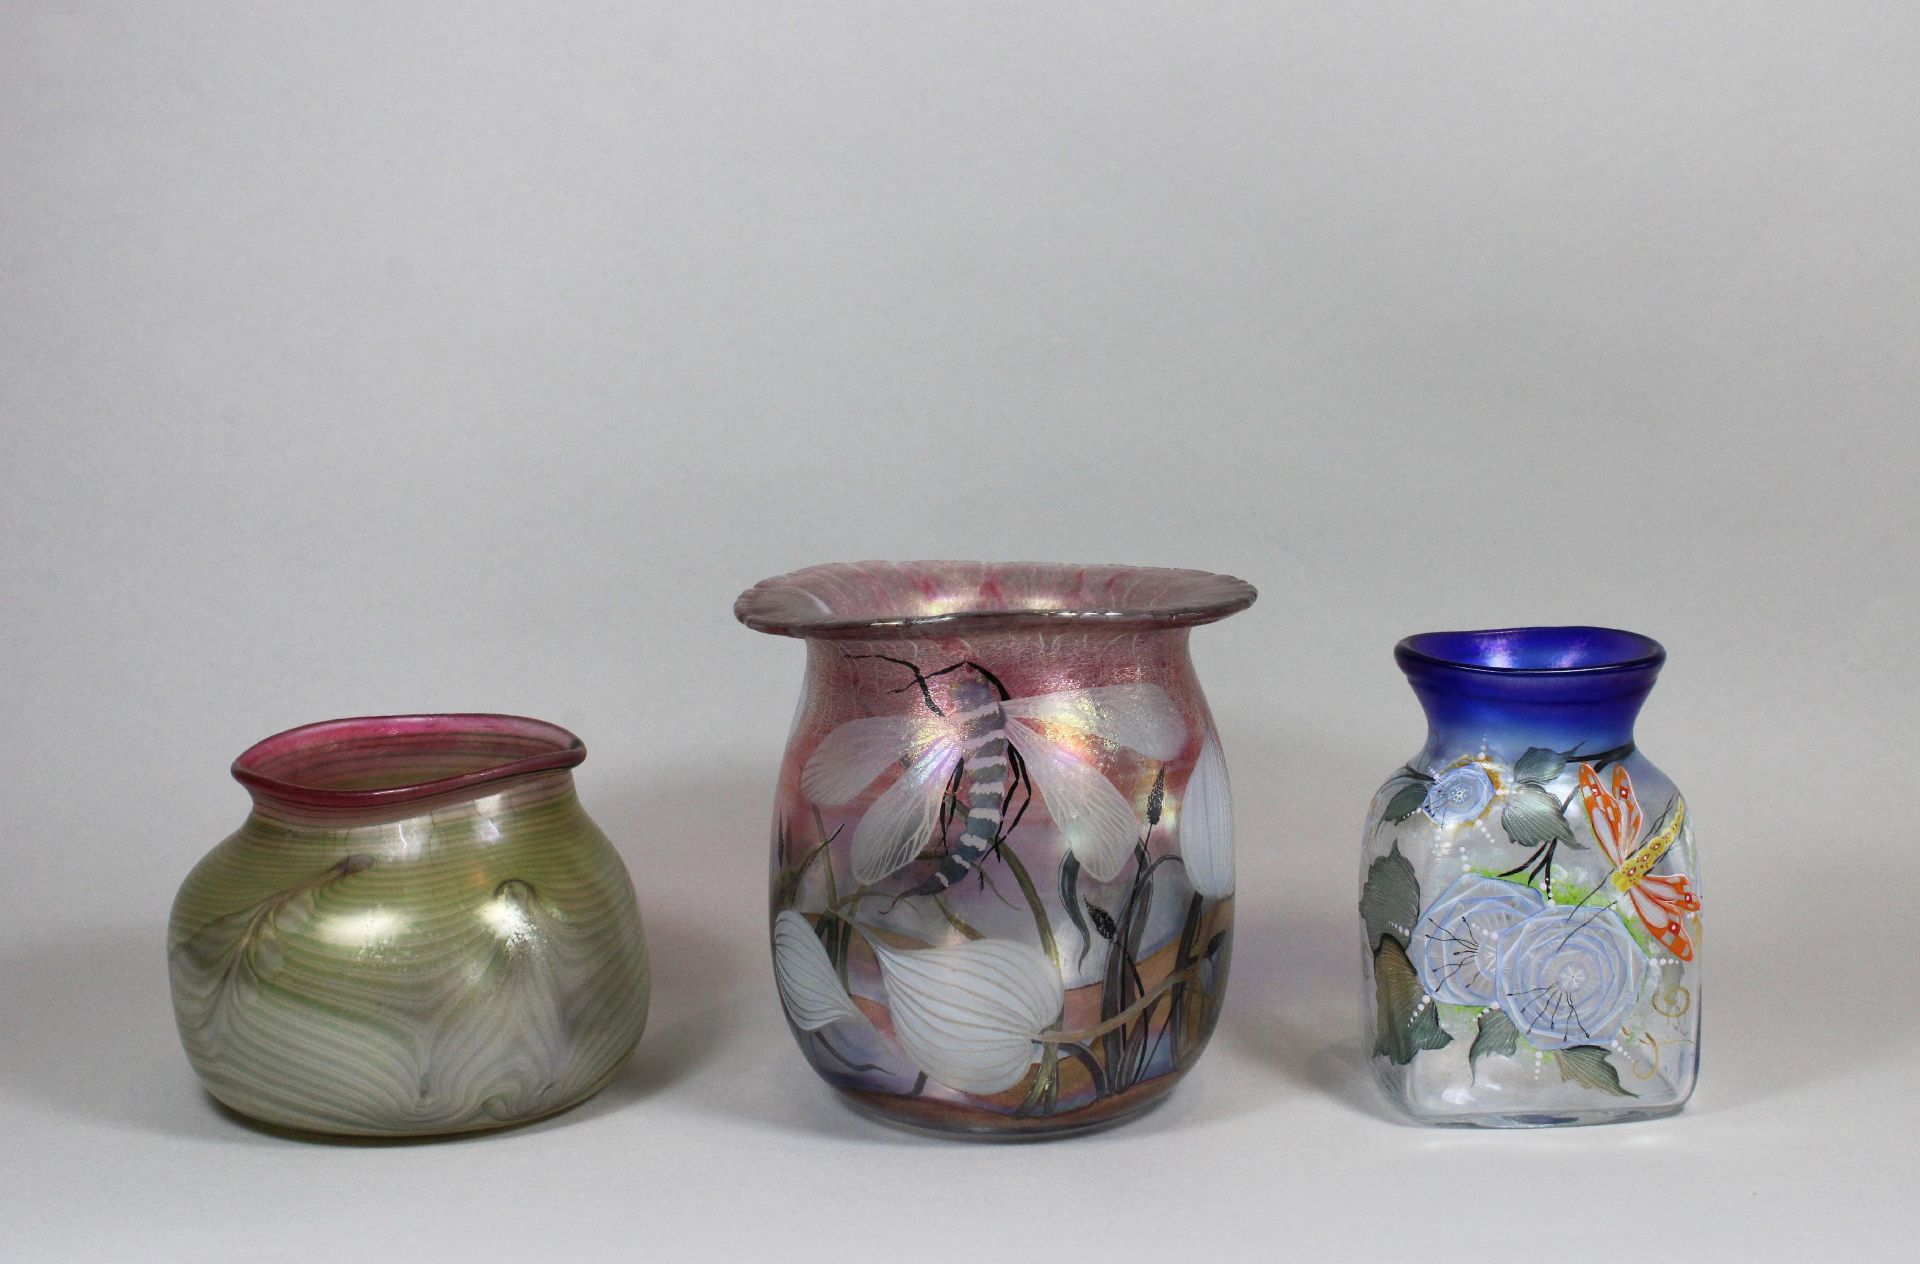 Drei Vasen, Erwin Eisch (deutsch, geb. 1927), 2 Hälfte 20 Jh., farbloses Glas, irisierender Überfang